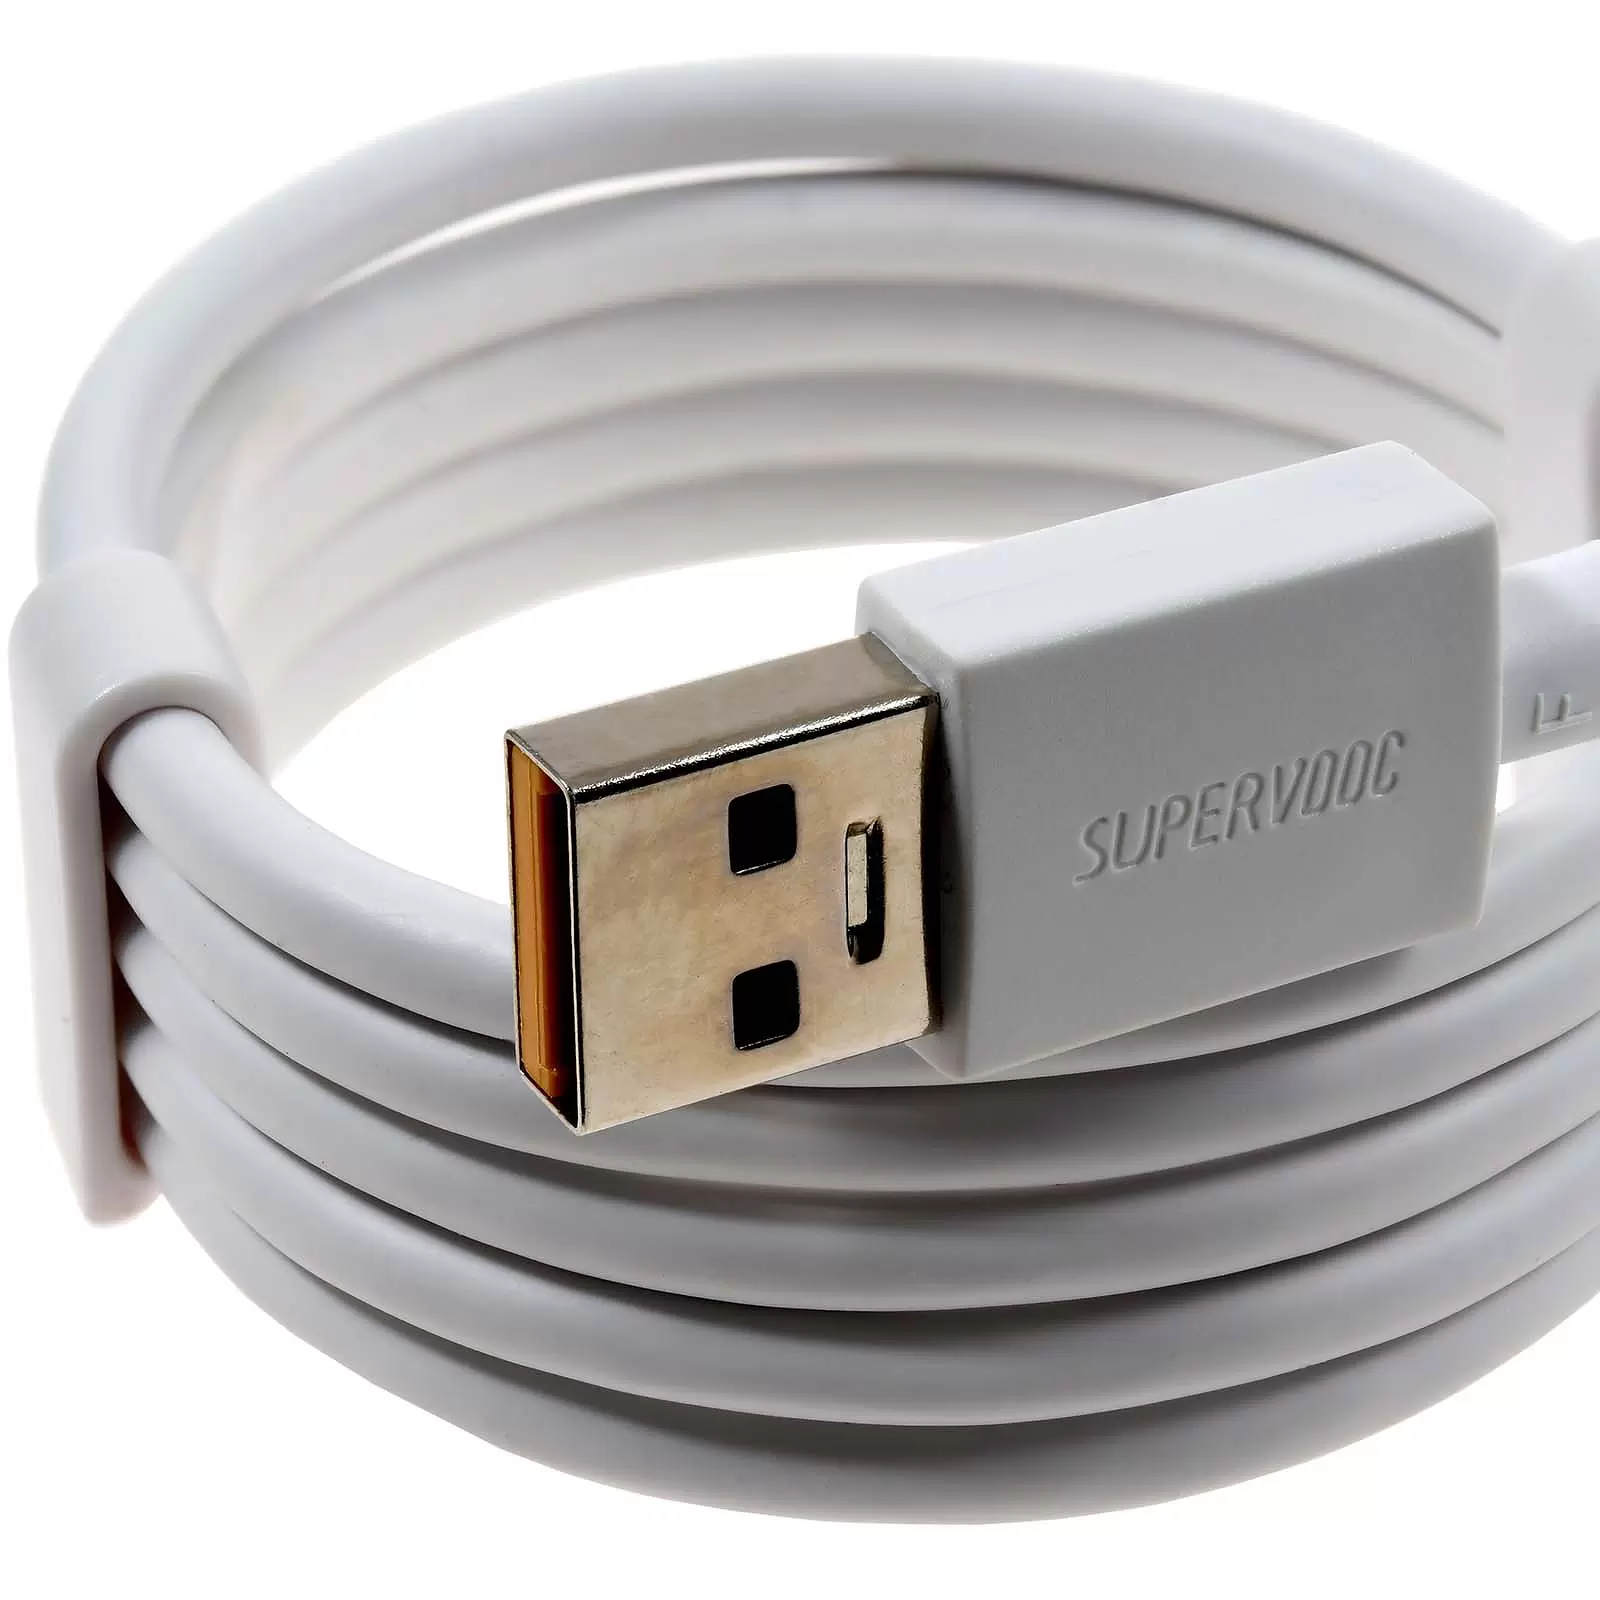 Oppo DL136 Schnellladekabel USB-A auf USB-C 65W CUP 1m weiß